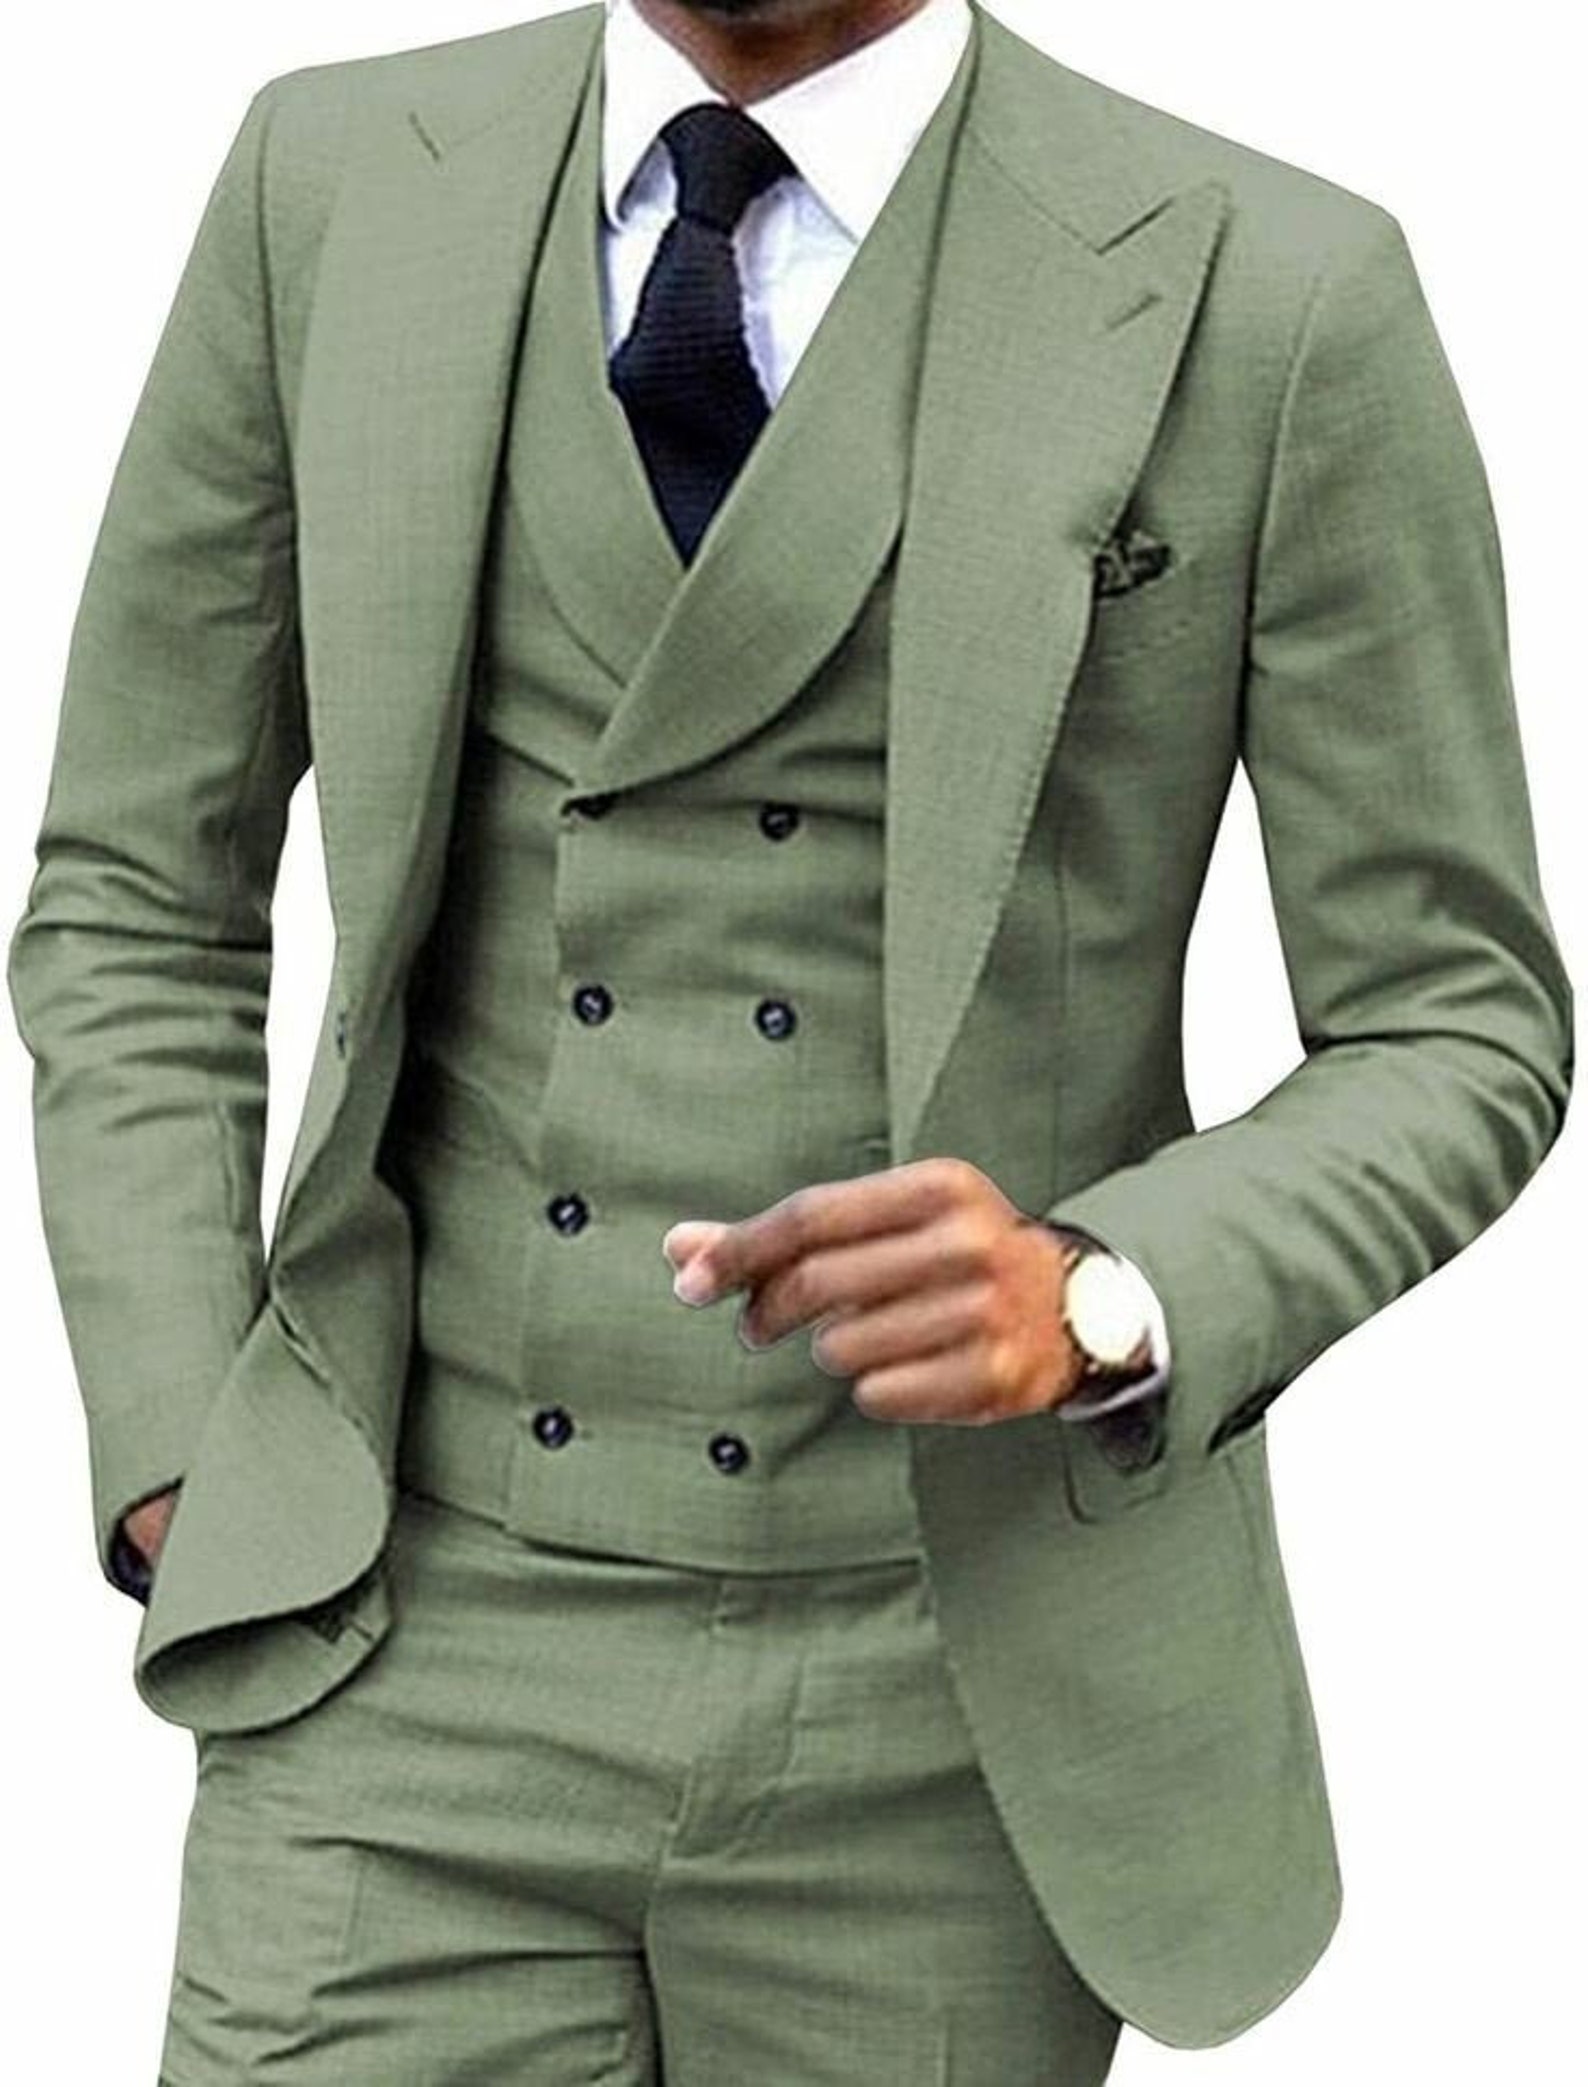 MEN WEDDING SUIT Men Light Green Suit Groom Wear Suit | Etsy